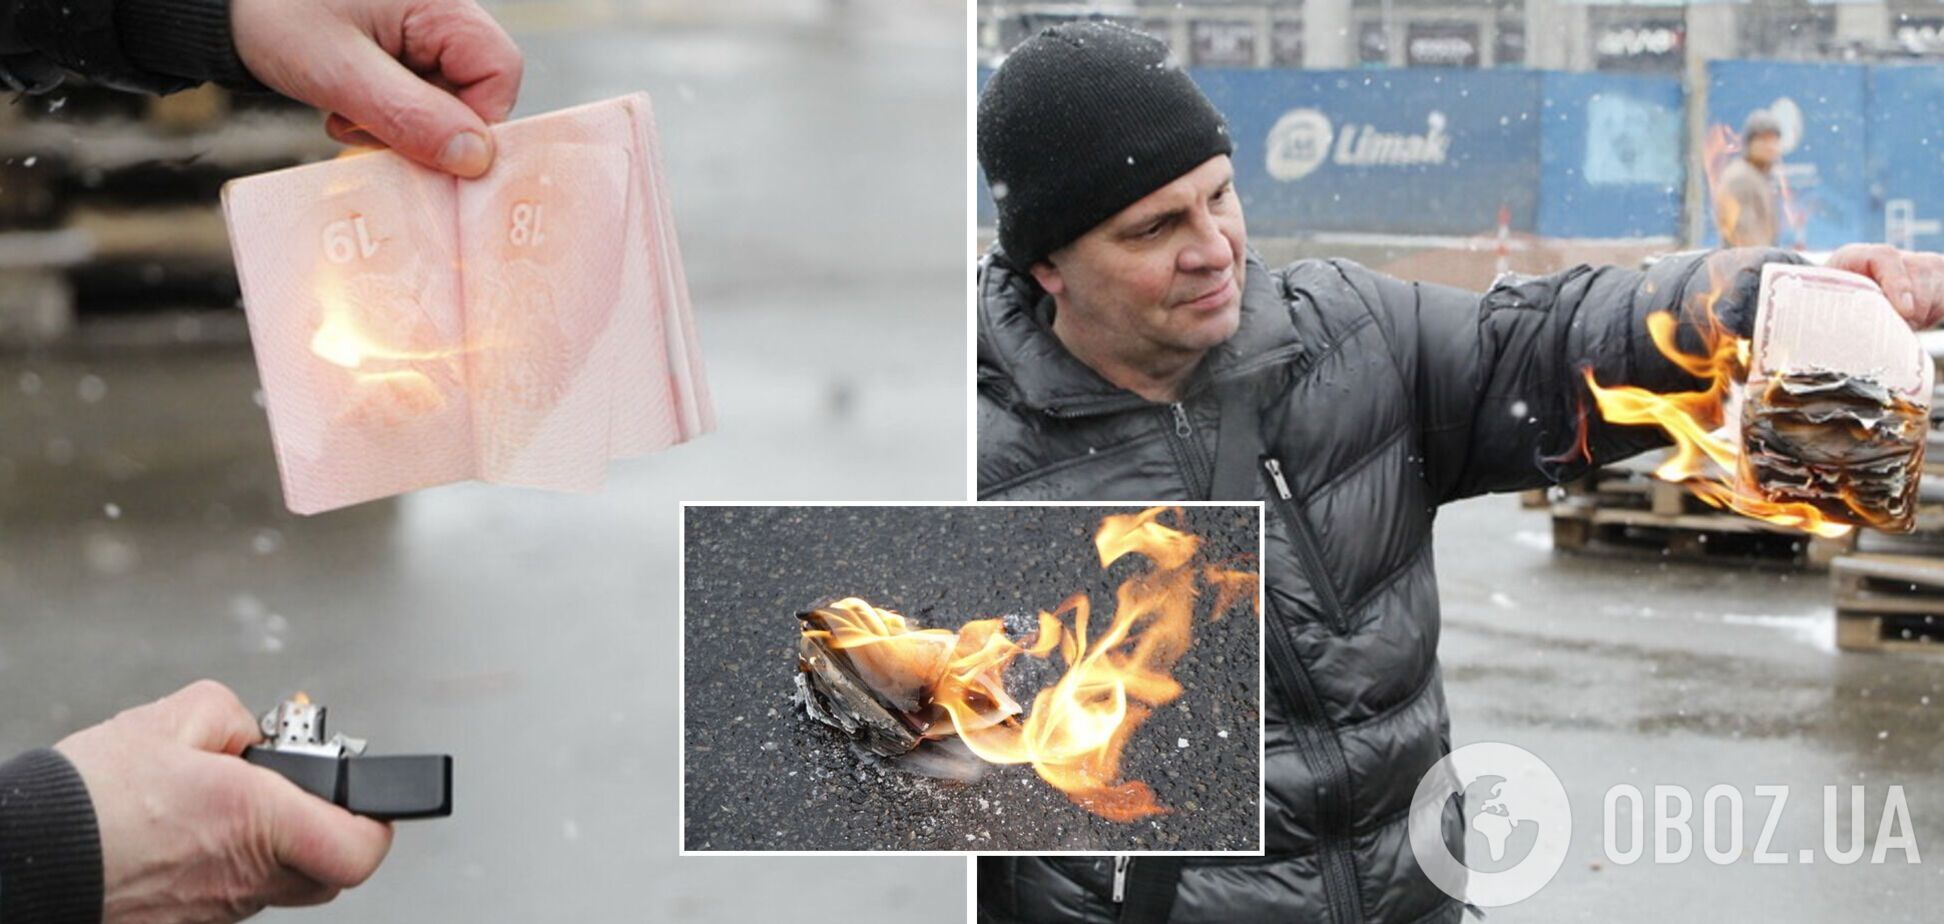 Василишин спалив свій паспорт.